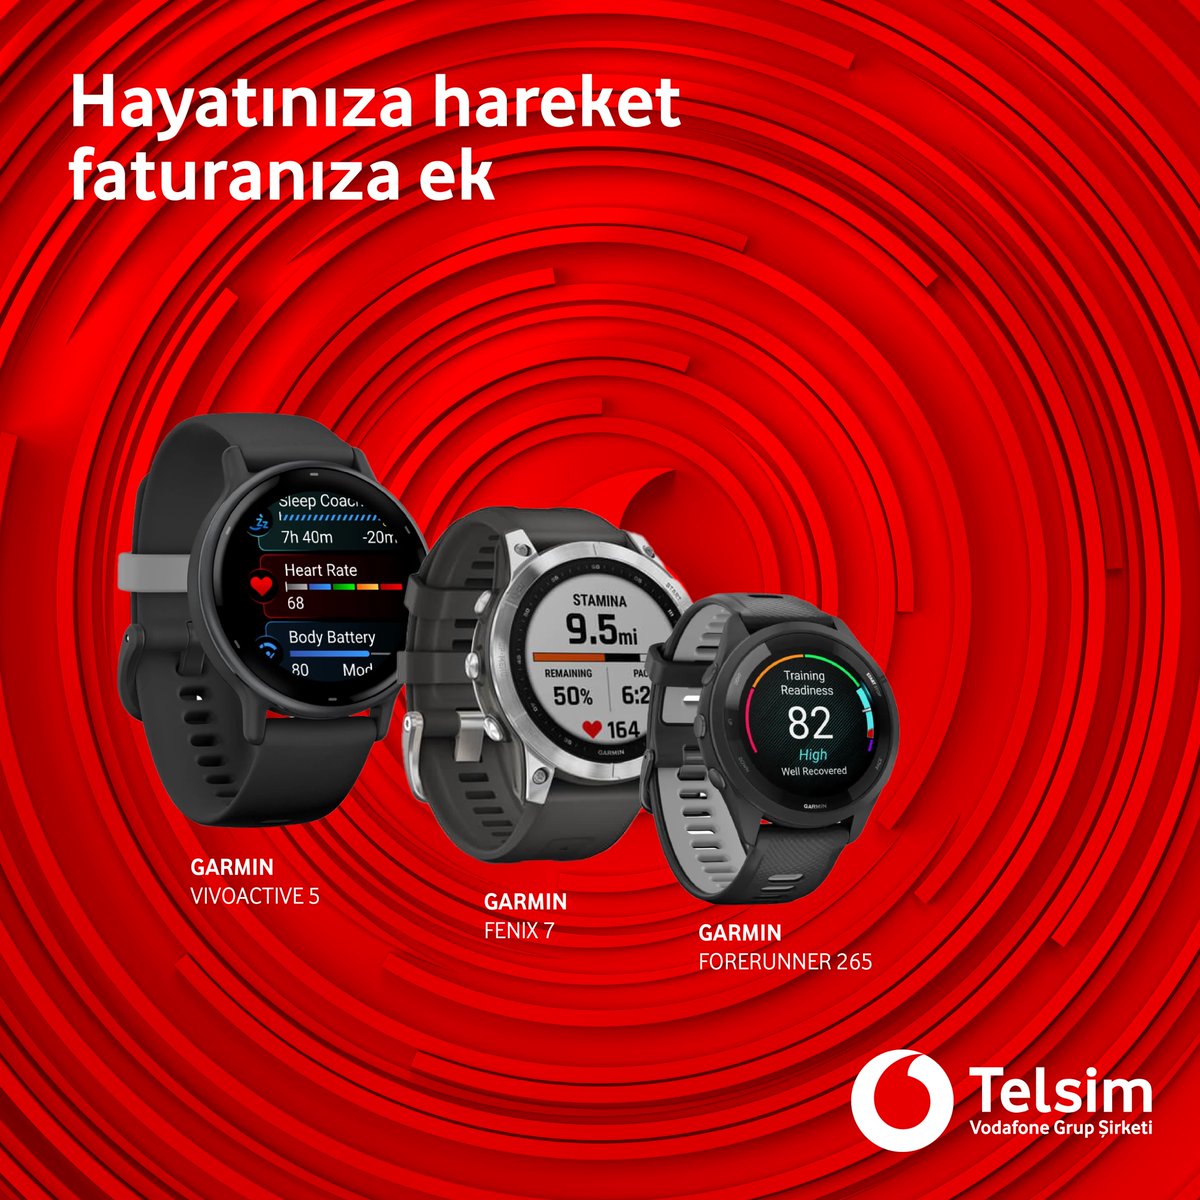 Garmin Akıllı Saatler, hayatınıza hareket katmanız için faturanıza ek taksitlerle Telsim'de sizi bekliyor.

Detaylar: vfcyp.co/GarminSaatler